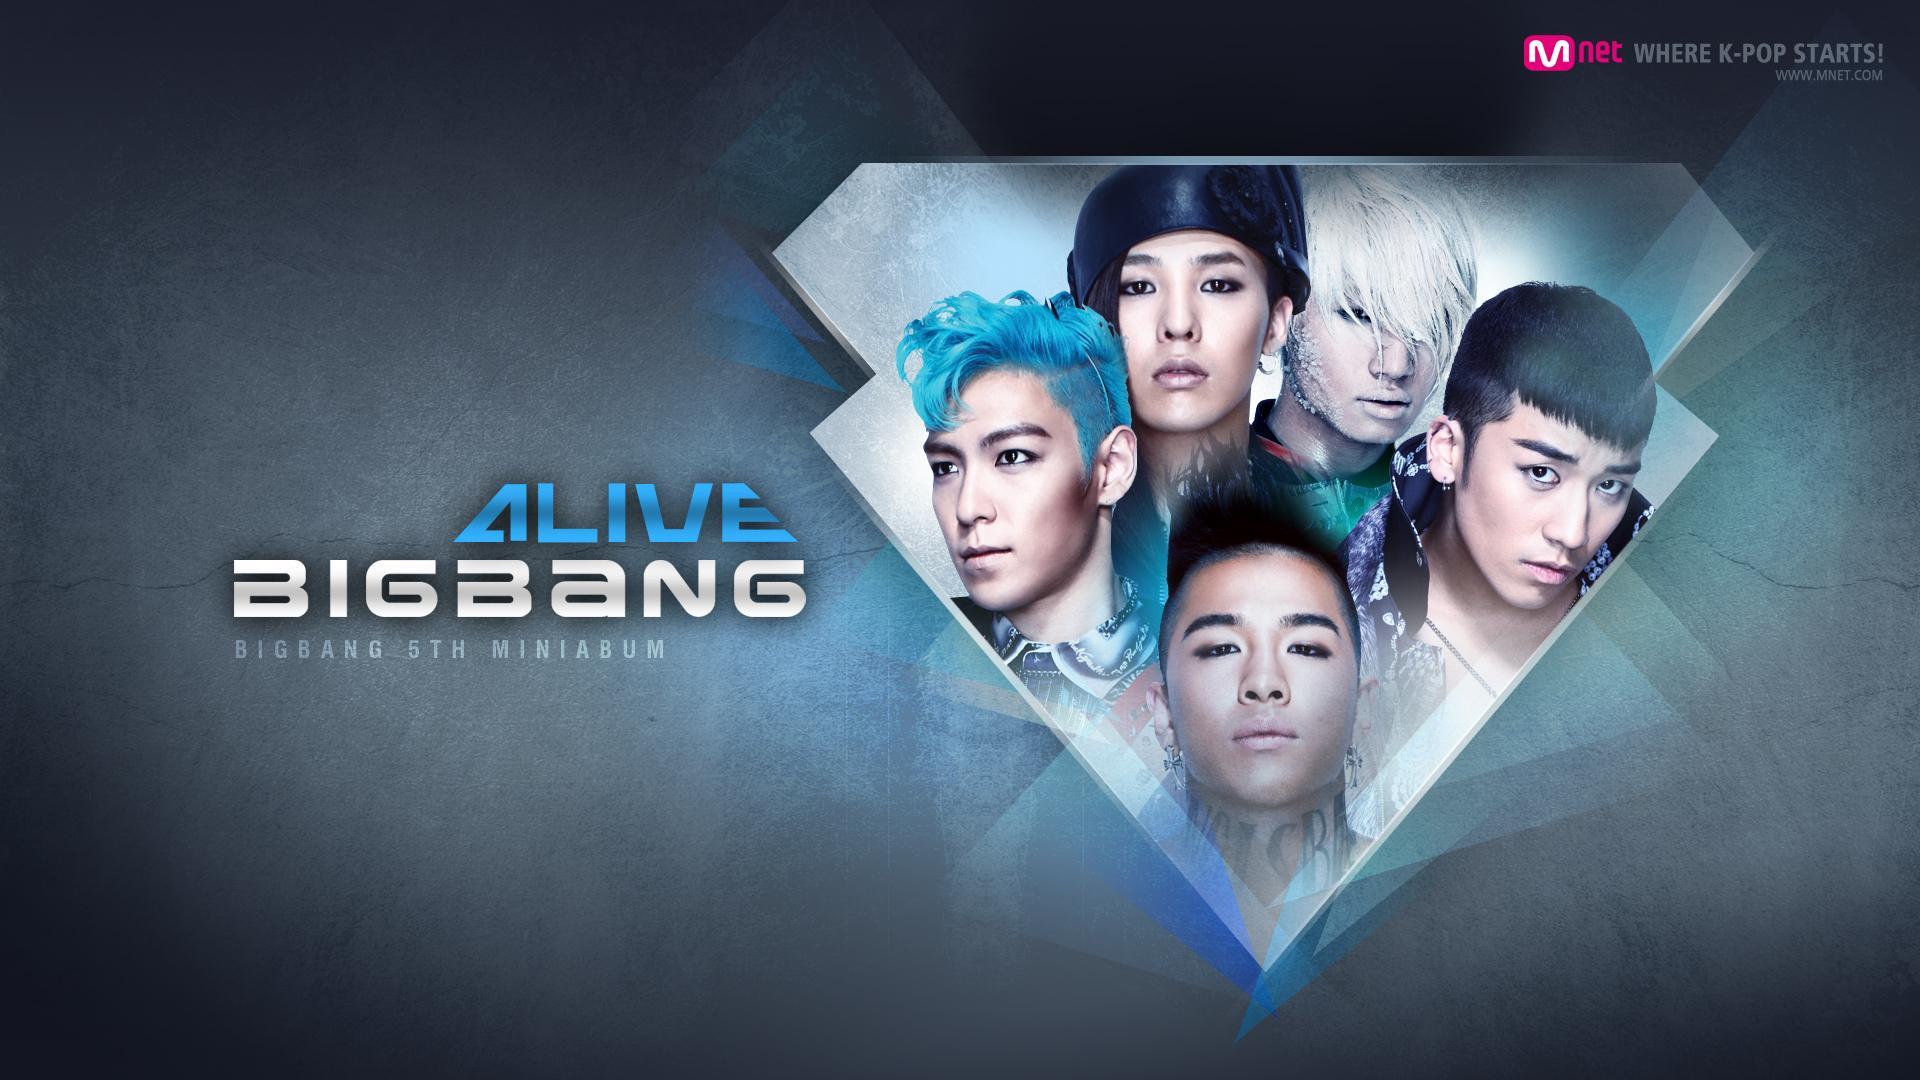 Big bang com. Биг бэнг группа. Корейская группа big Bang. Big Bang группа логотип. К поп группа Биг бэнг.